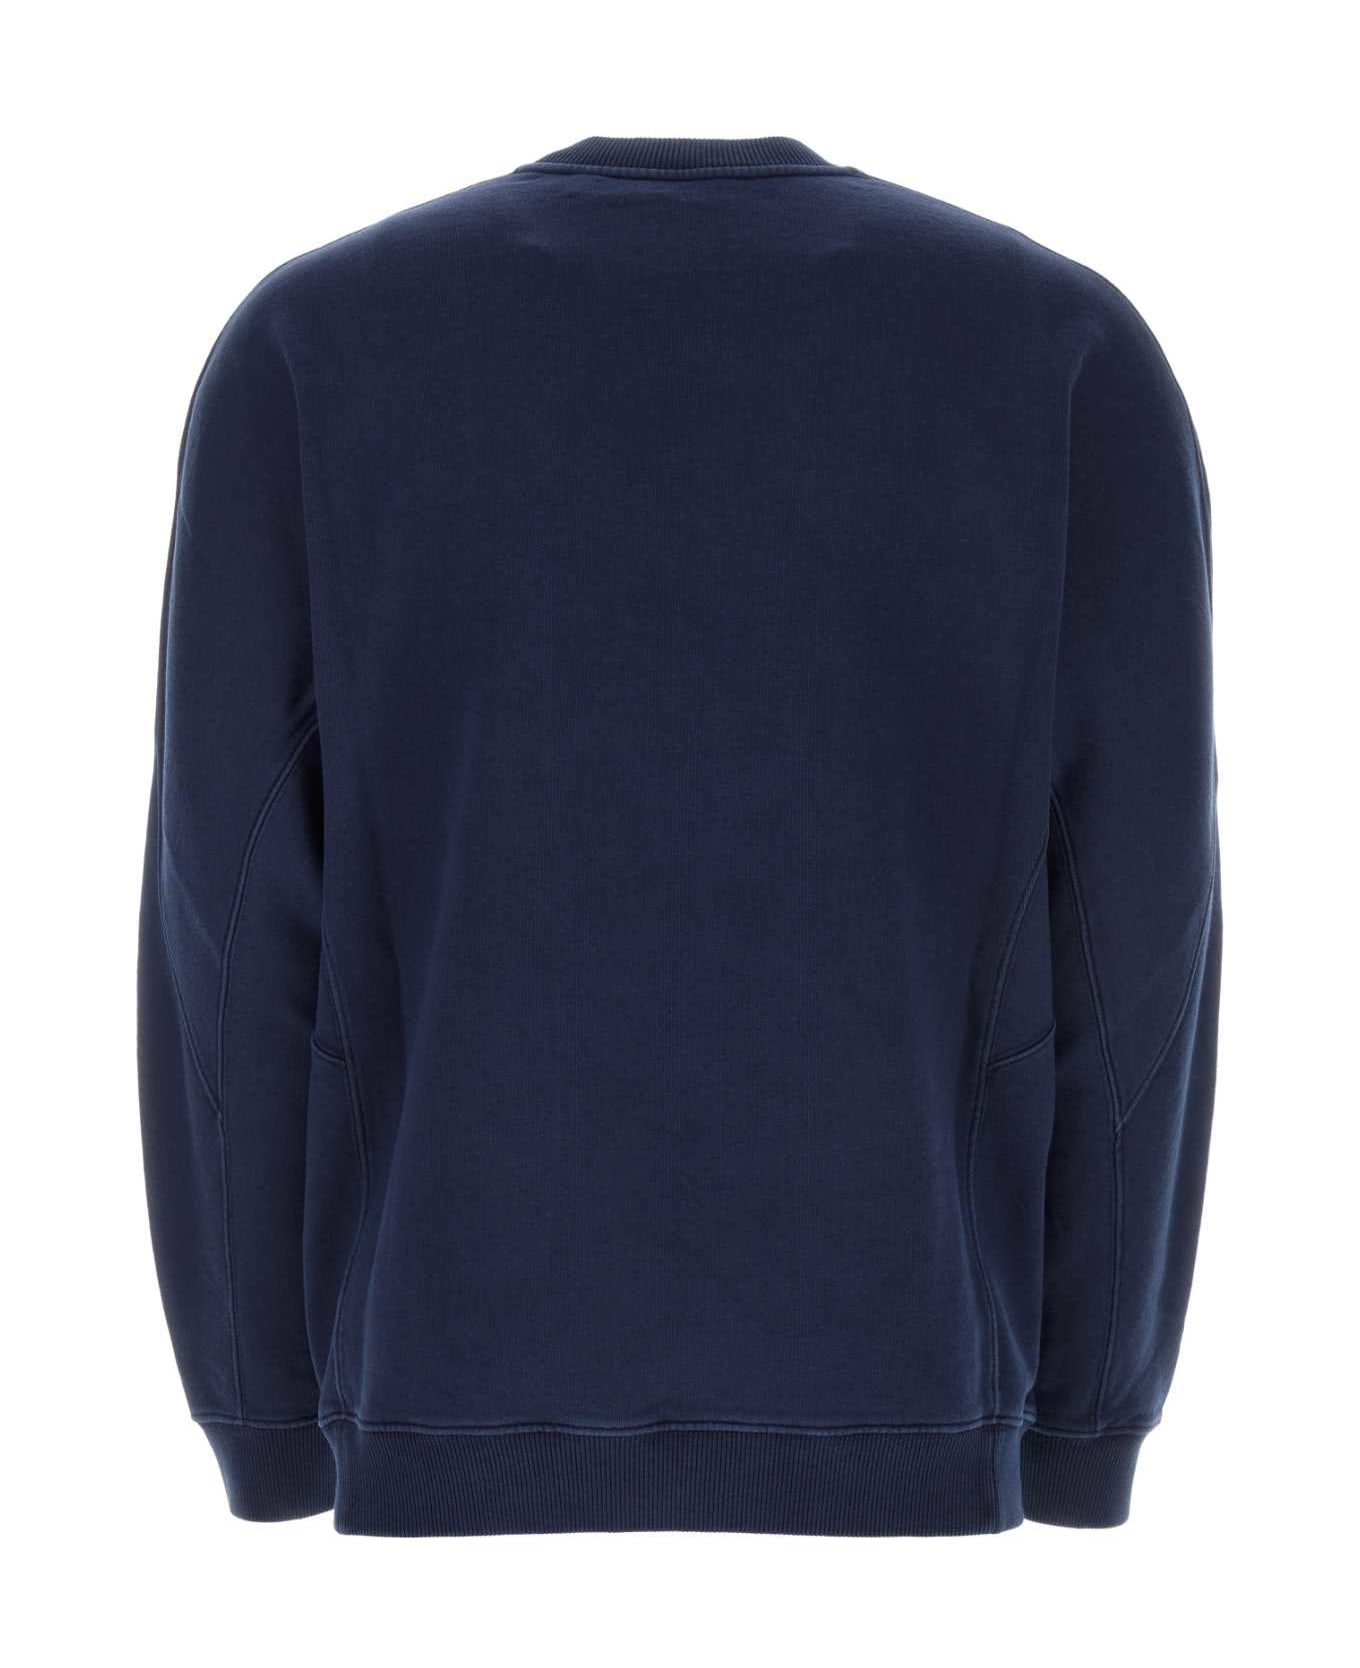 Burberry Navy Blue Cotton Oversize Sweatshirt - TWILIGHTNAVY